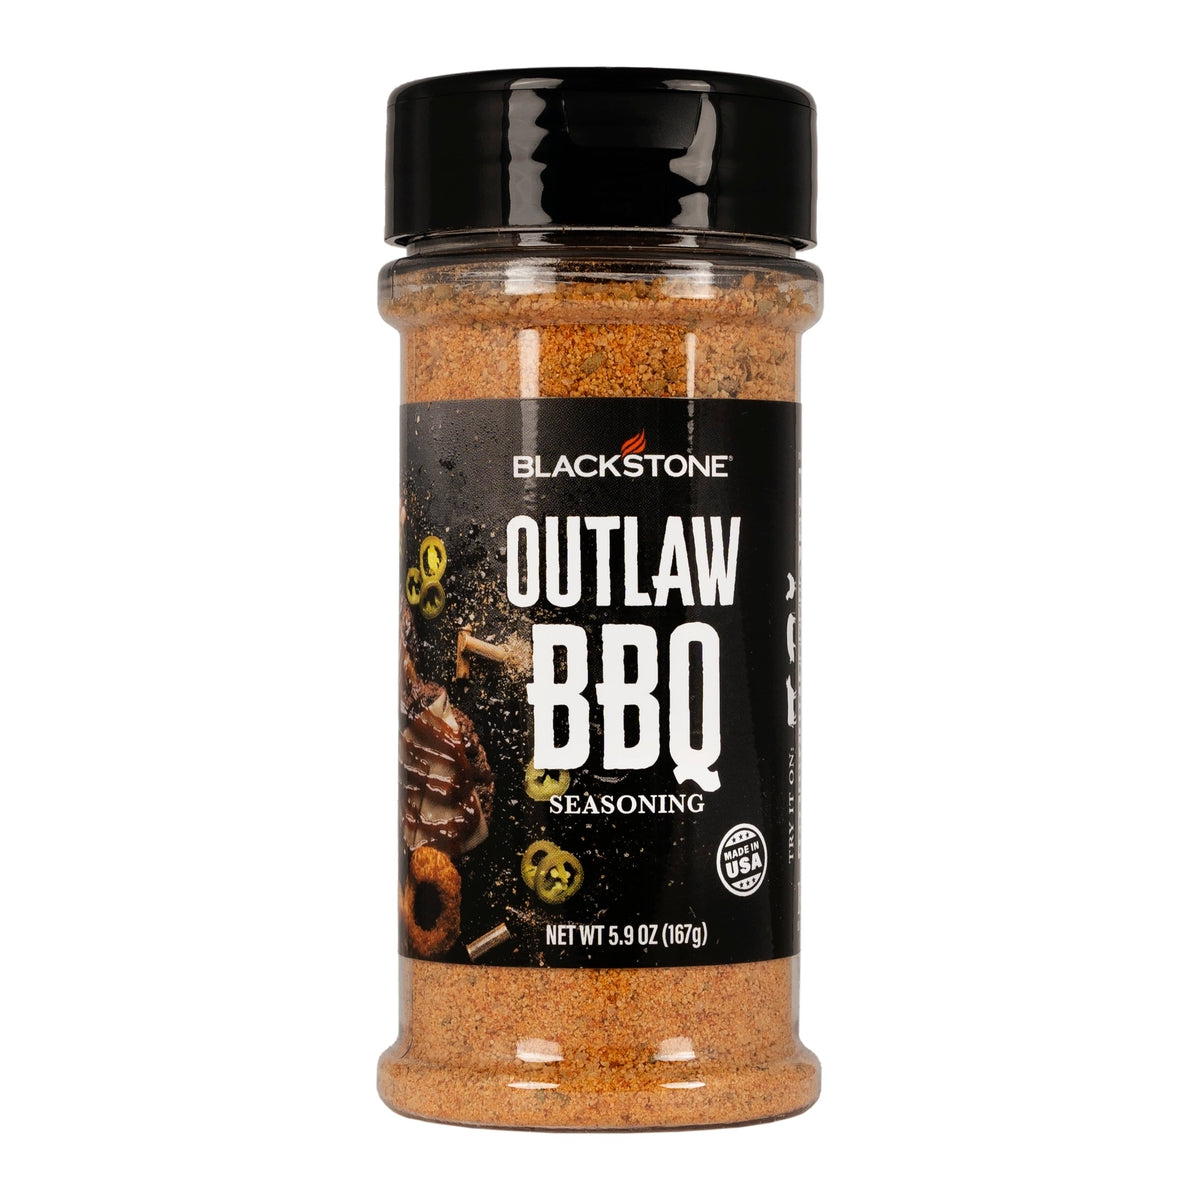 Blackstone Qualifies for Free Shipping Blackstone Outlaw BBQ Seasoning #4160